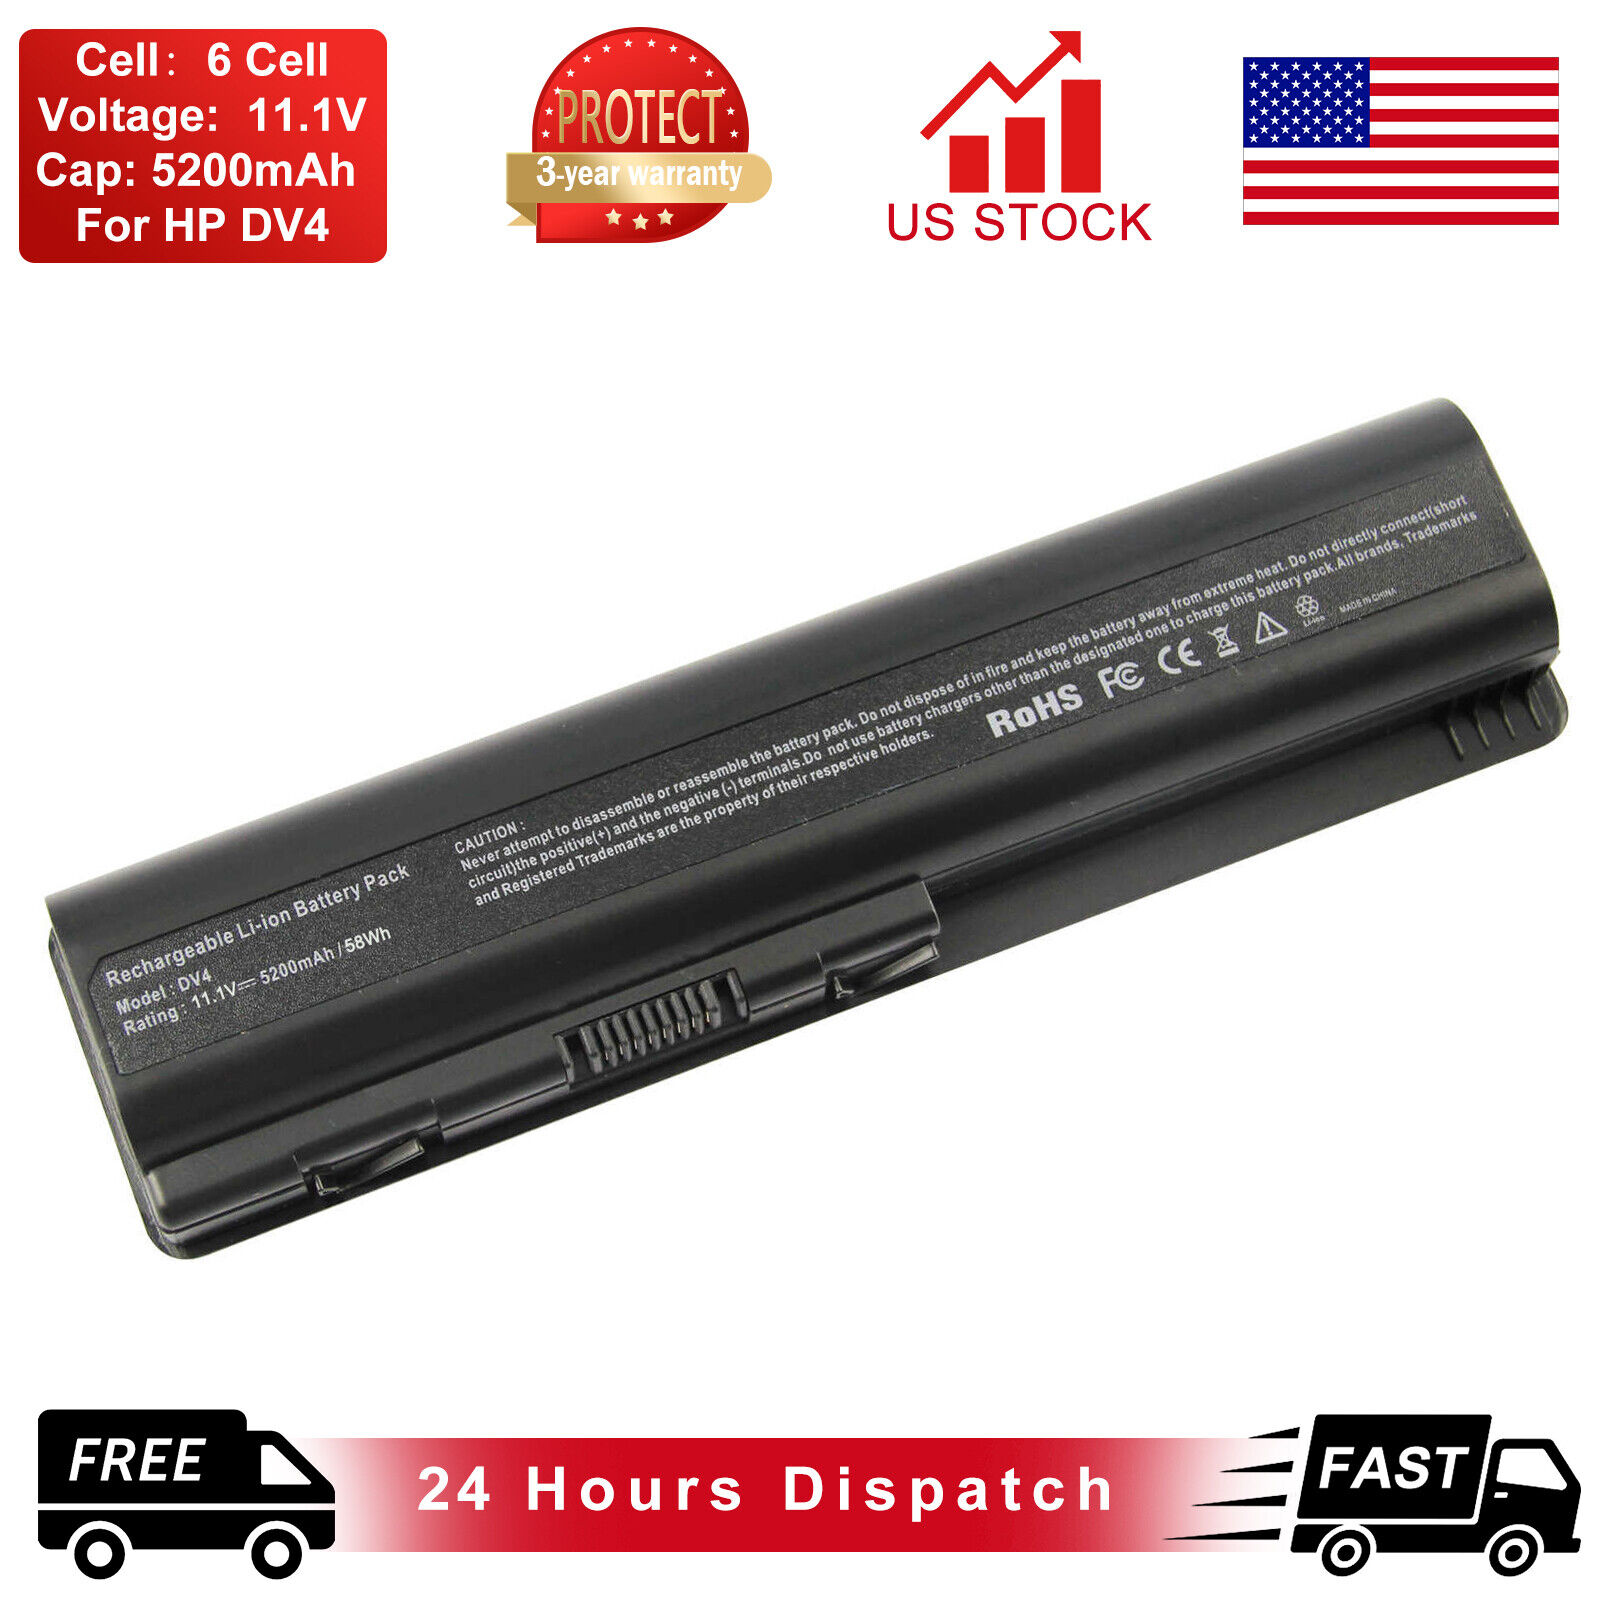 Spare Battery 6cell For 484170-001 for HP Pavilion DV4 DV5 DV6 Laptop us